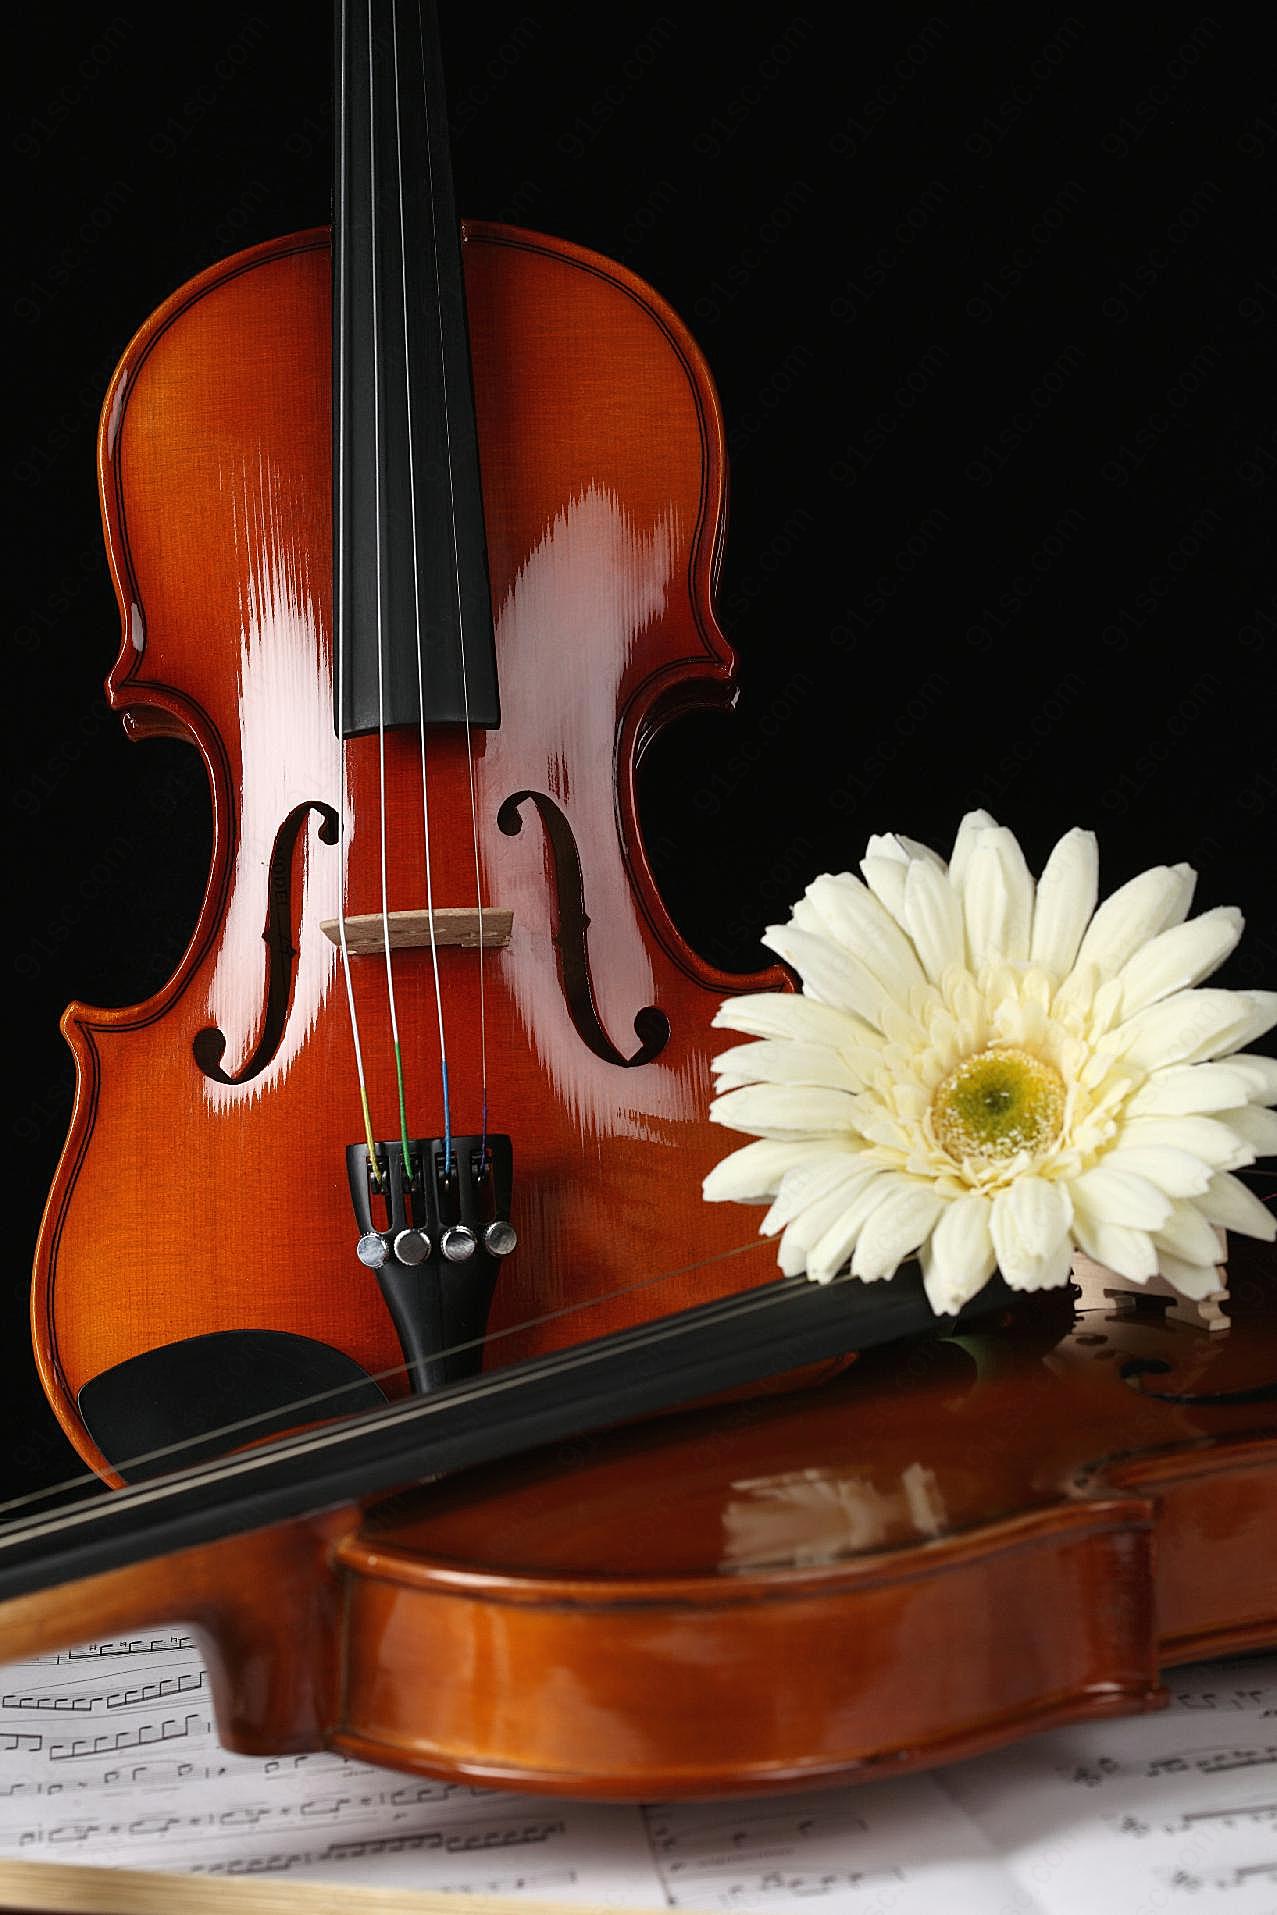 小提琴鲜花图片下载摄影高清